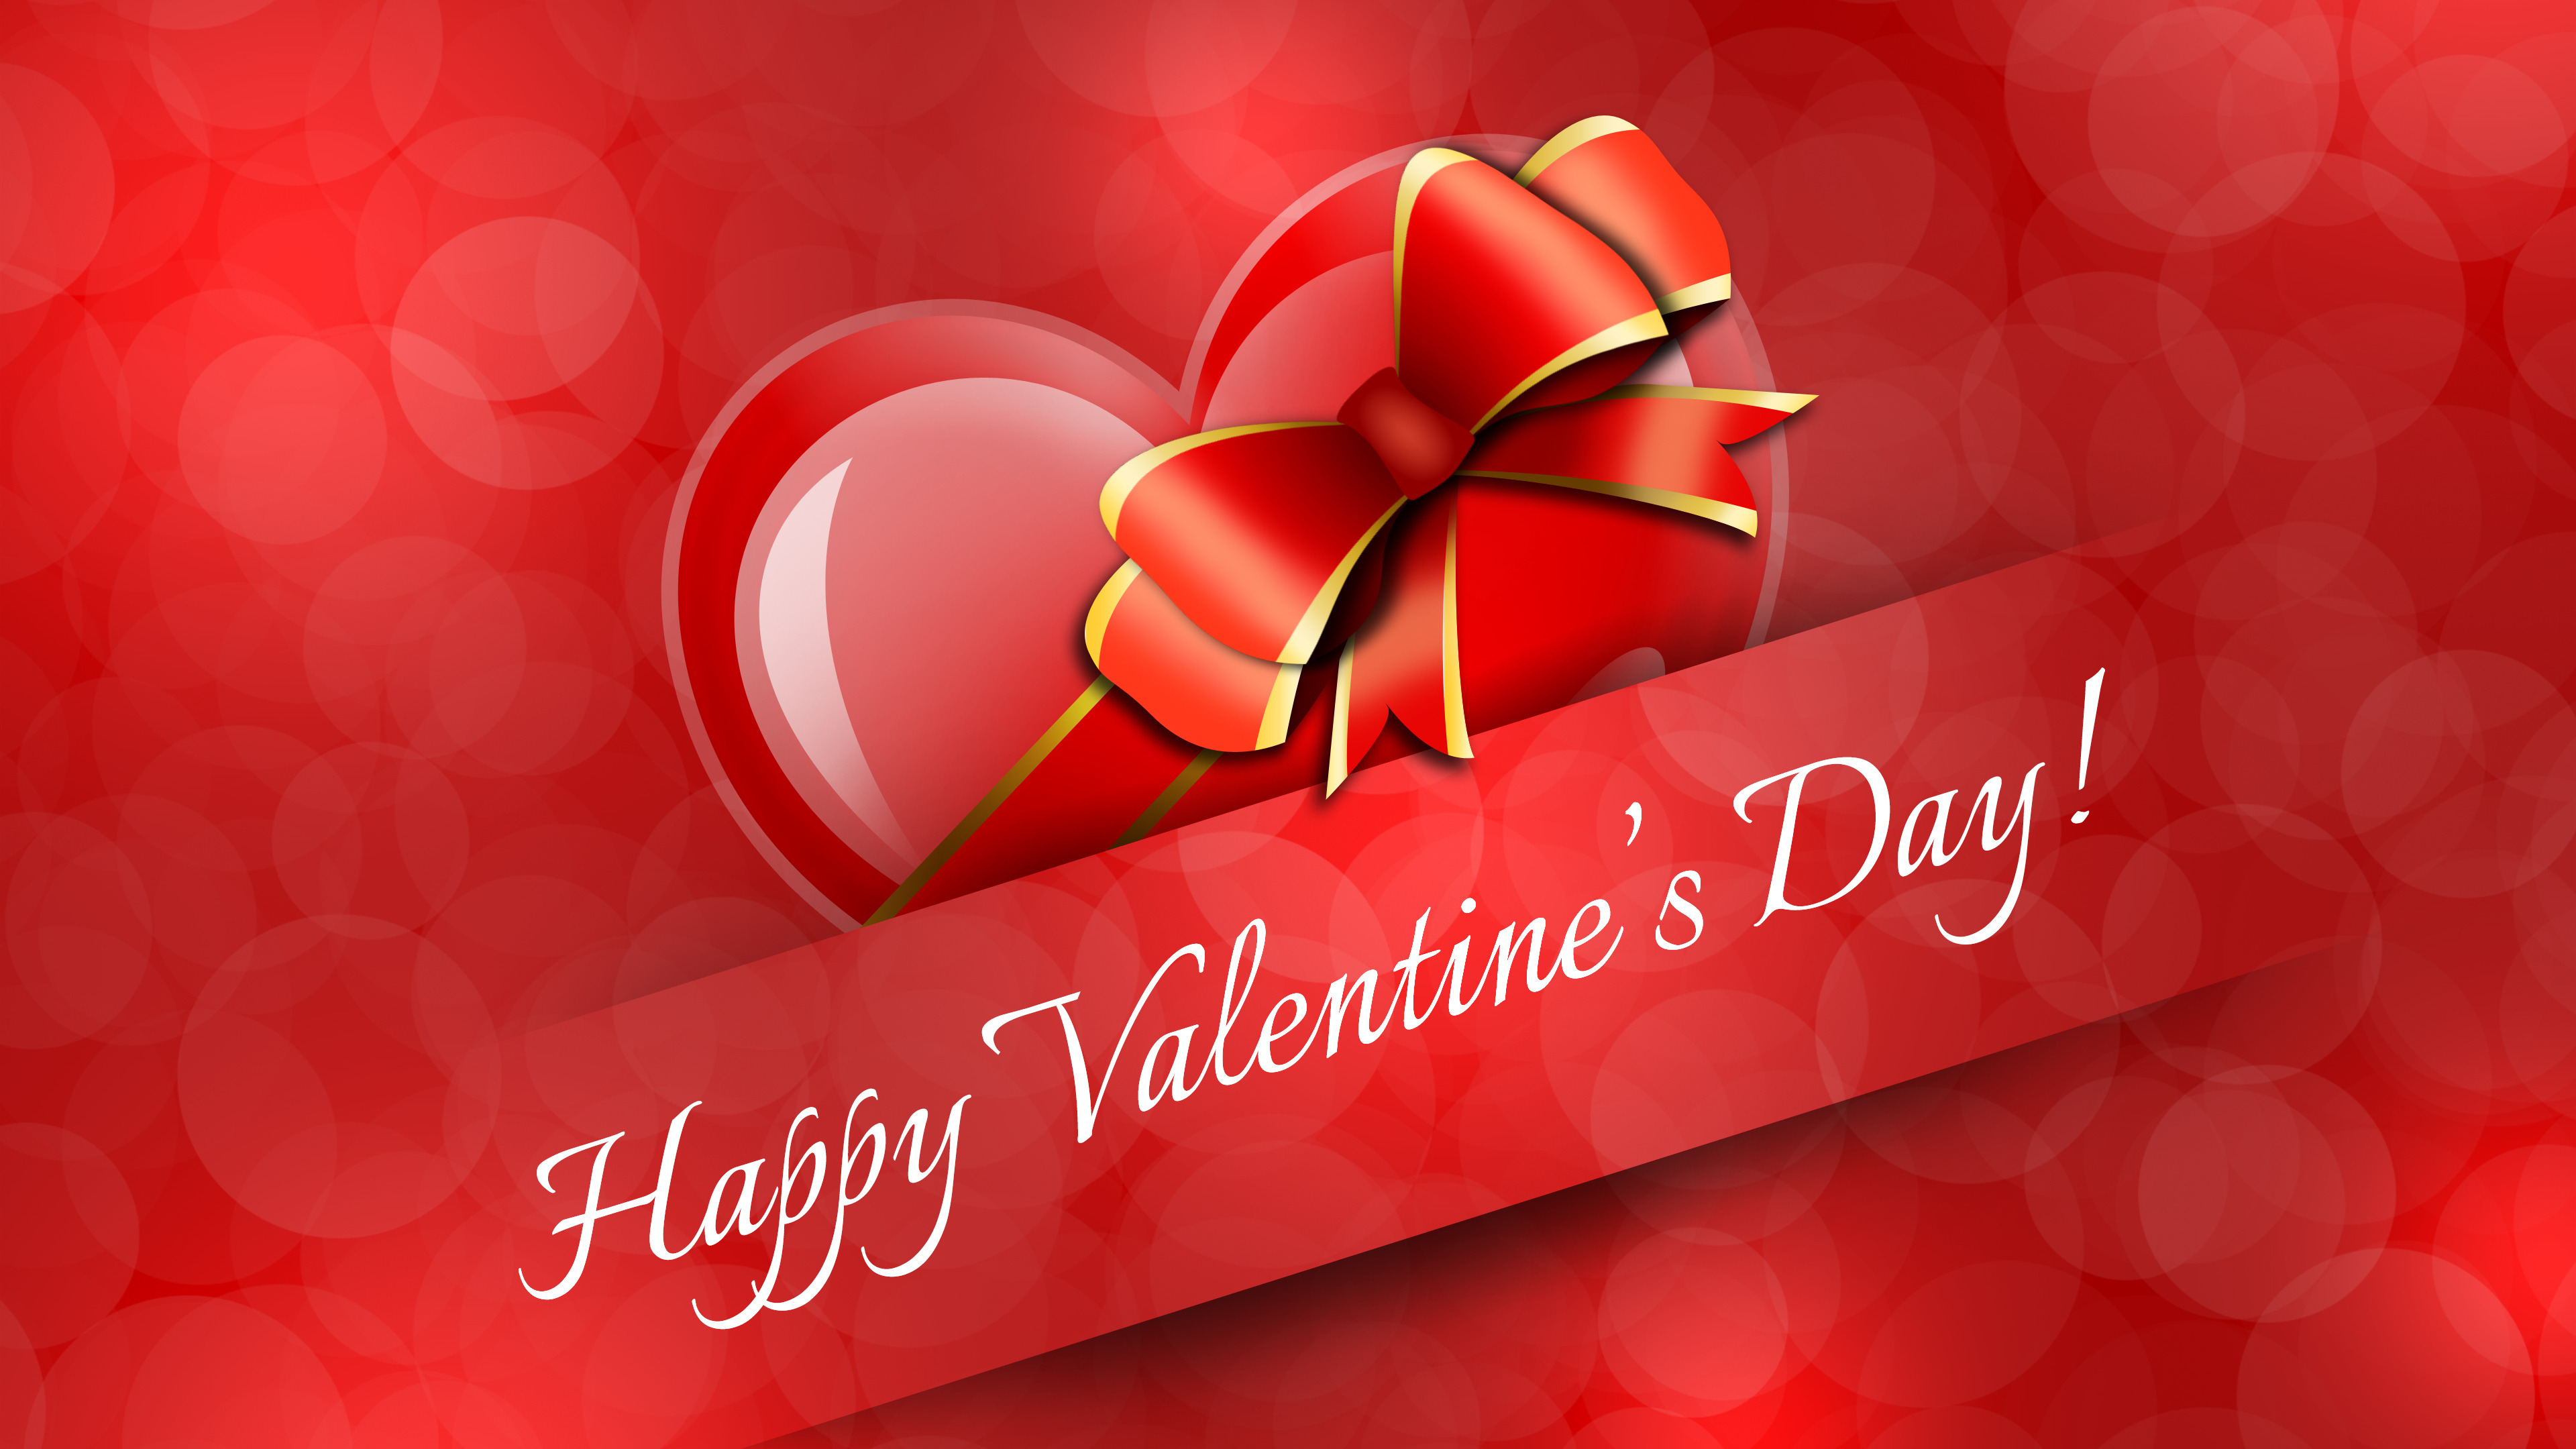 felice giorno di san valentino wallpaper hd,rosso,testo,cuore,san valentino,amore